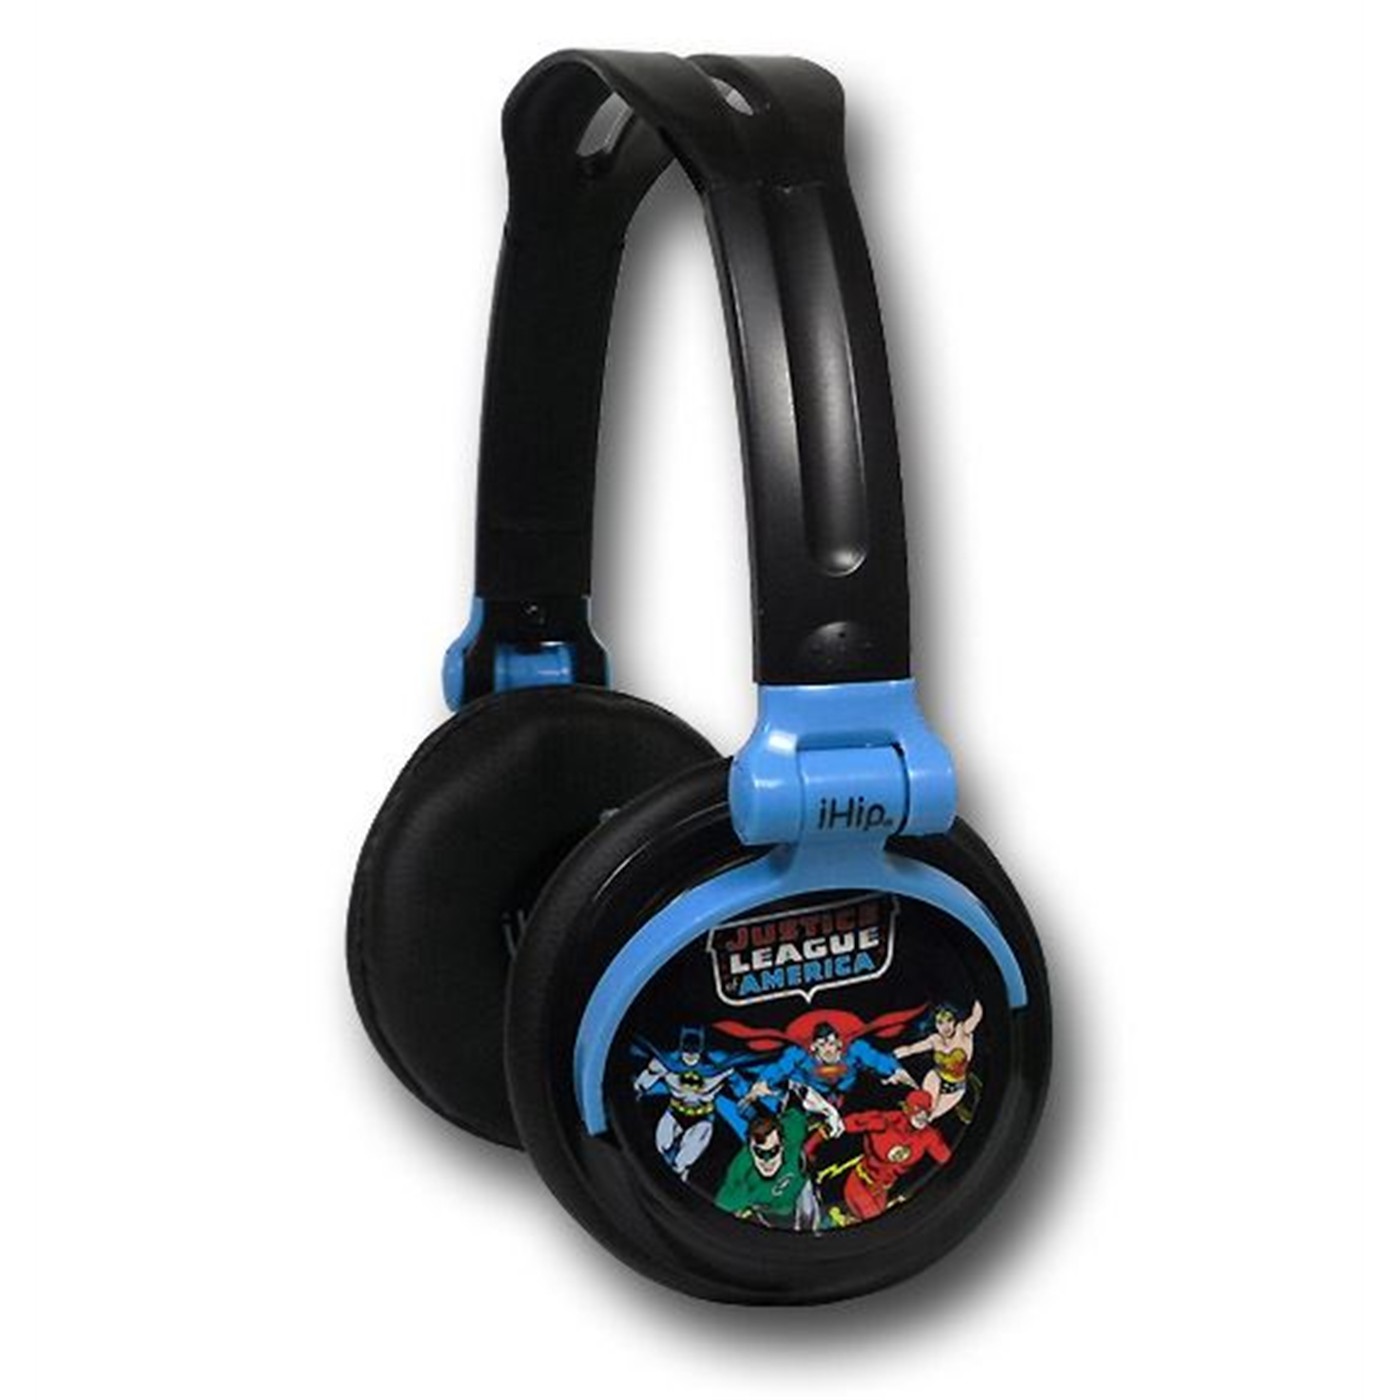 Justice League of America DJ Style Headphones